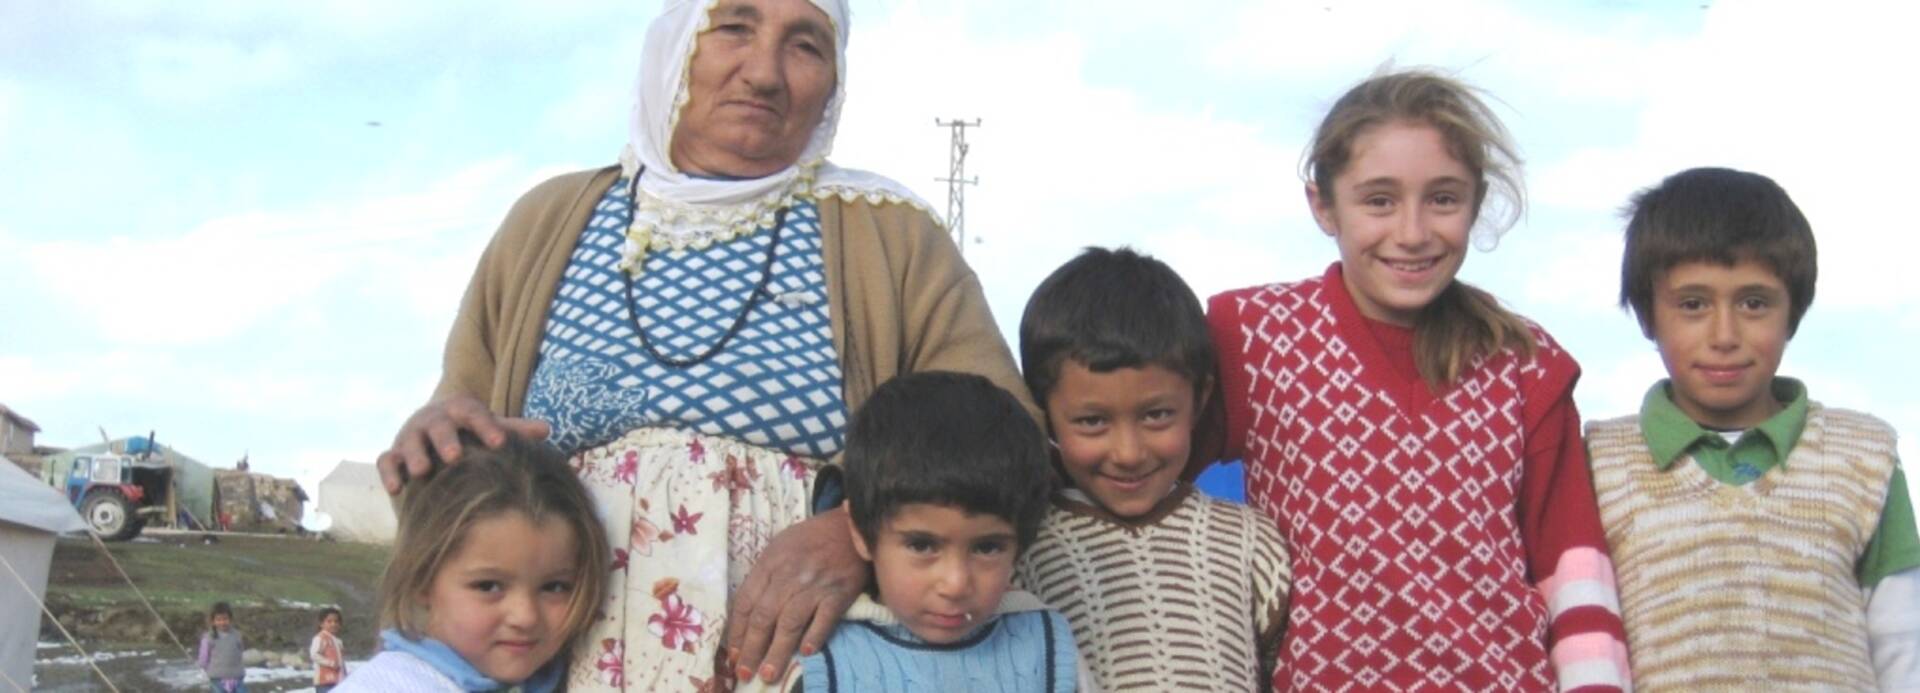 Familie in der Türkei